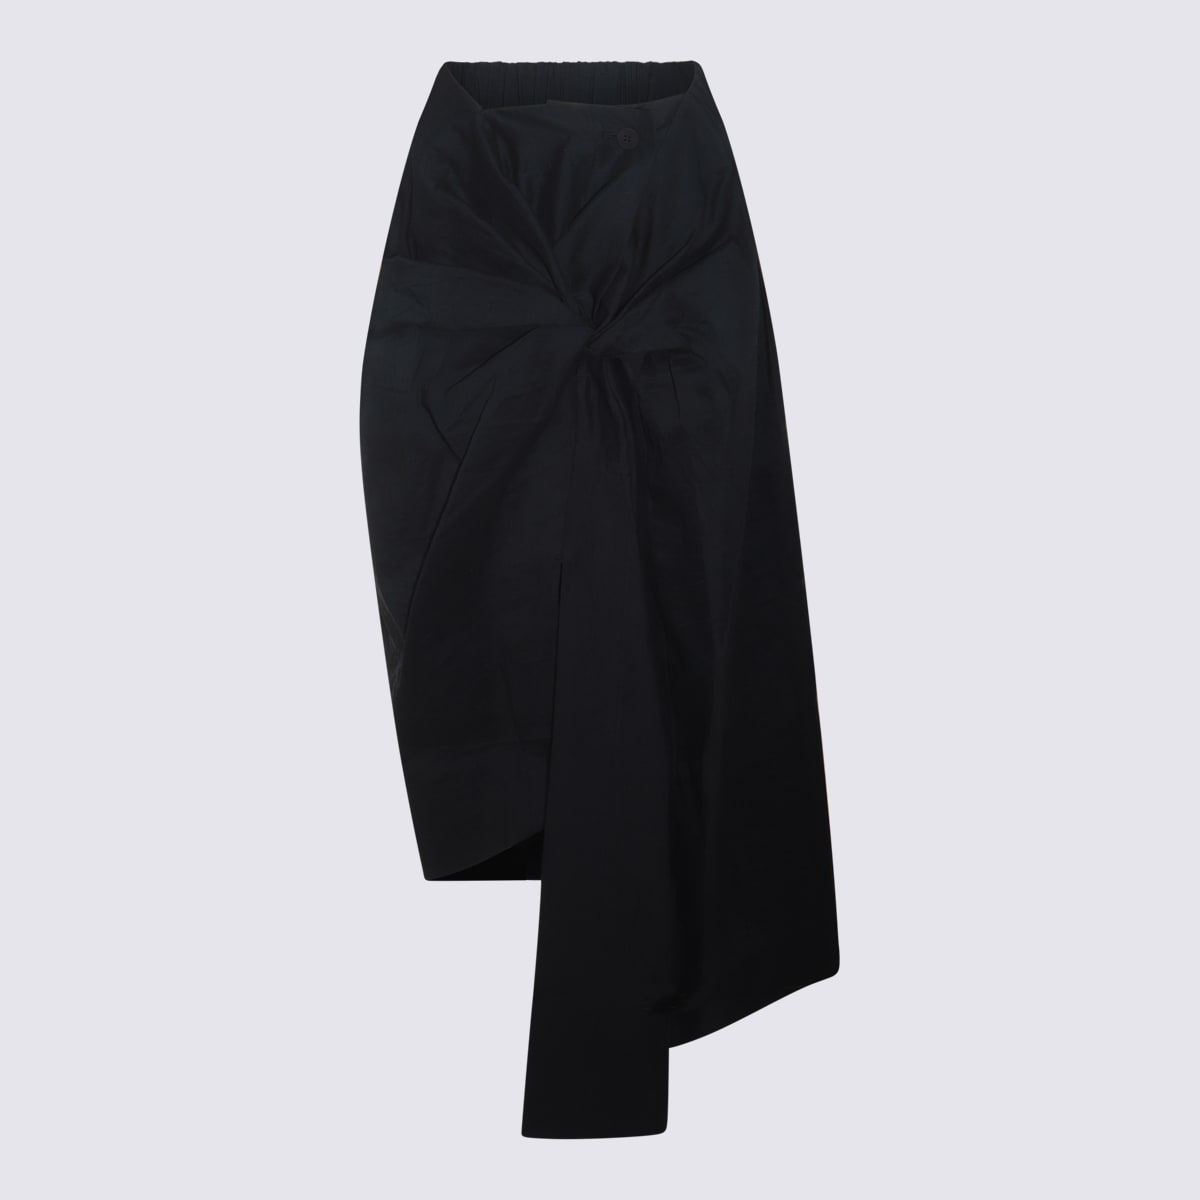 Issey Miyake Black Skirt